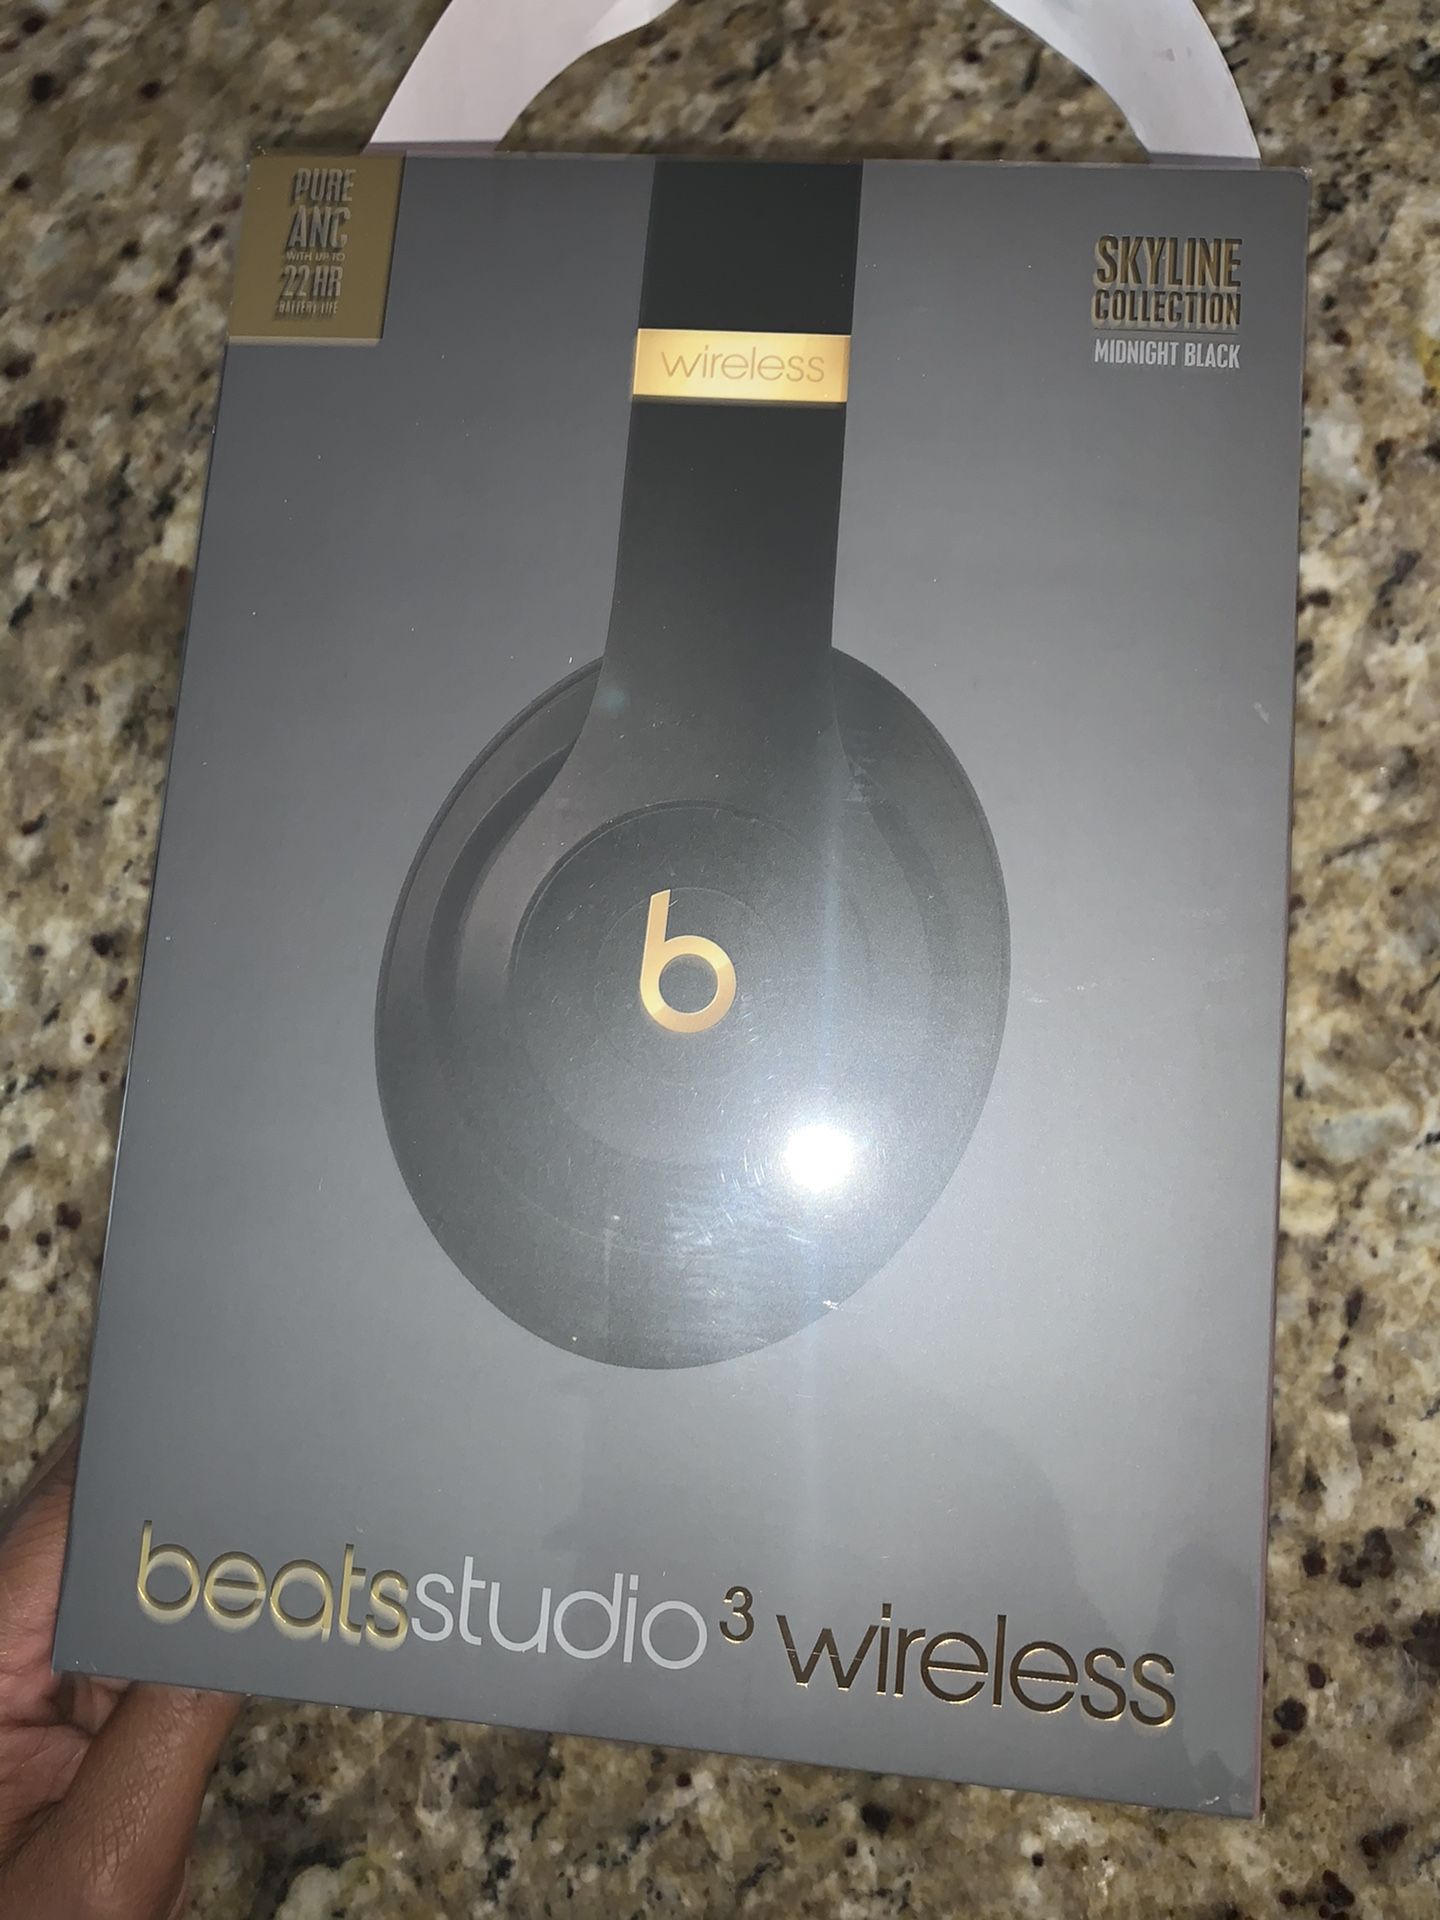 Beats Studio 3 wireless brand new unopened